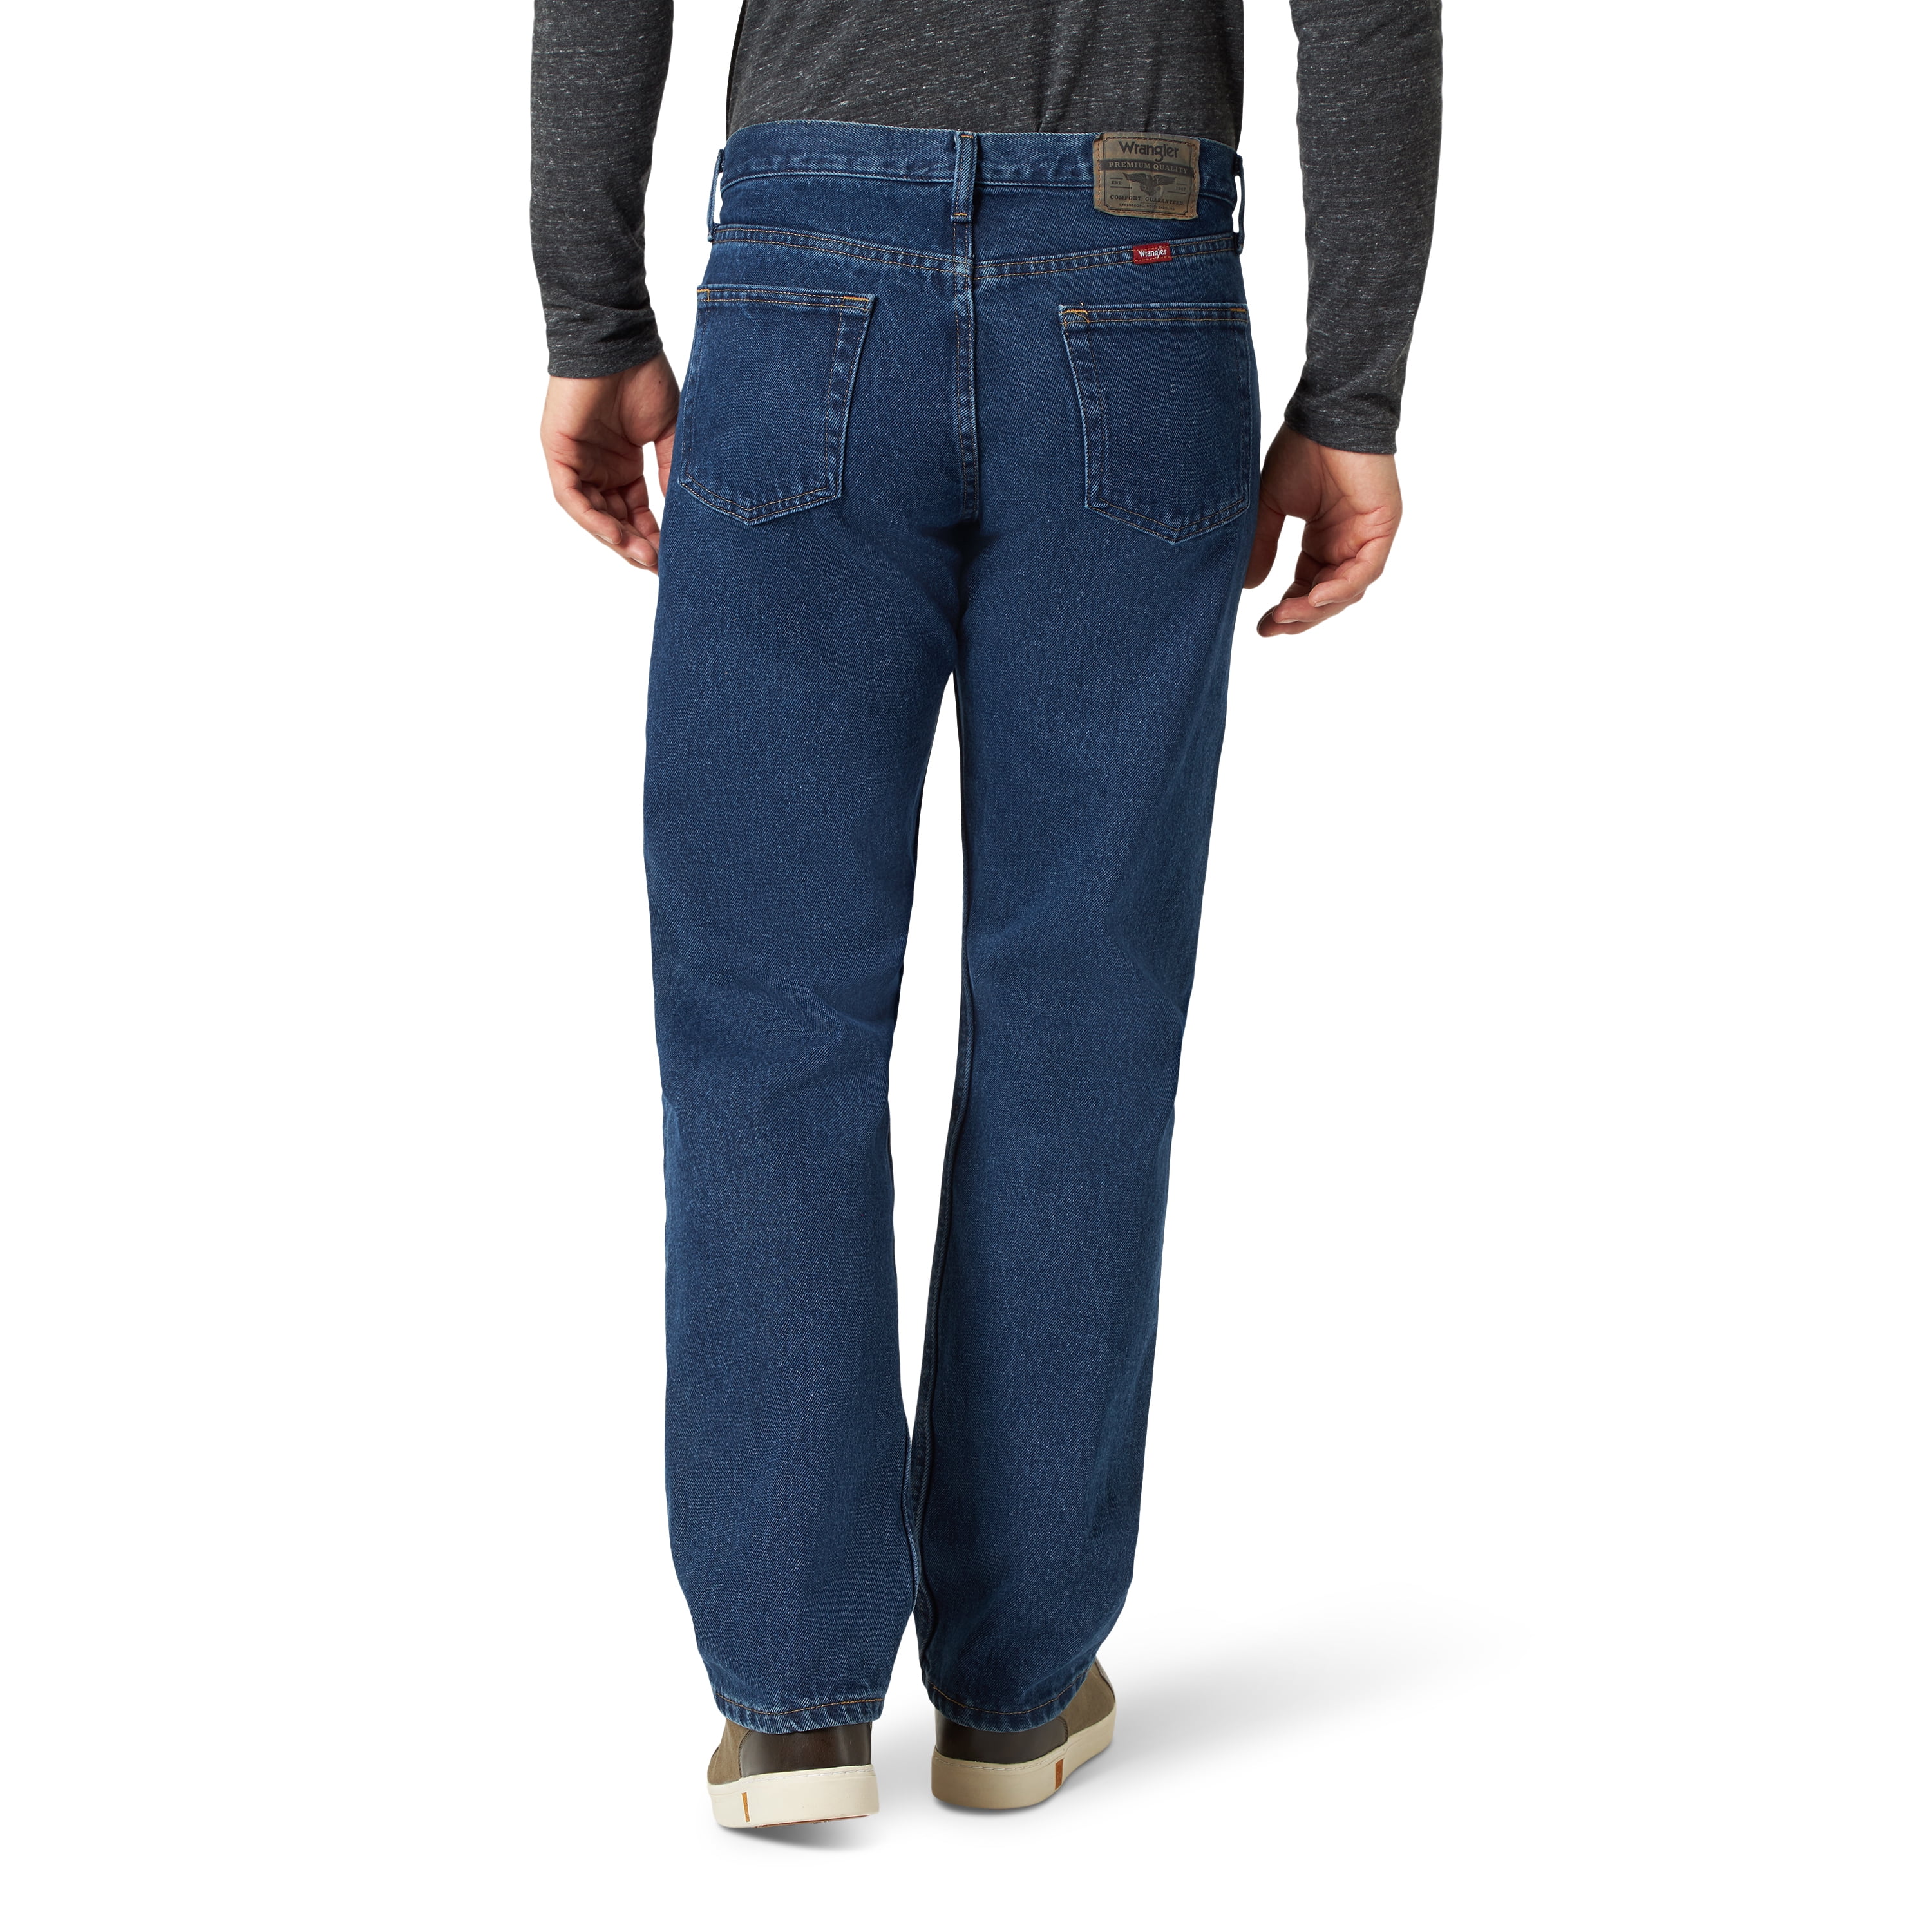 Wrangler - [20% Off] Wrangler Men's Relaxed Fit Jeans - Walmart.com